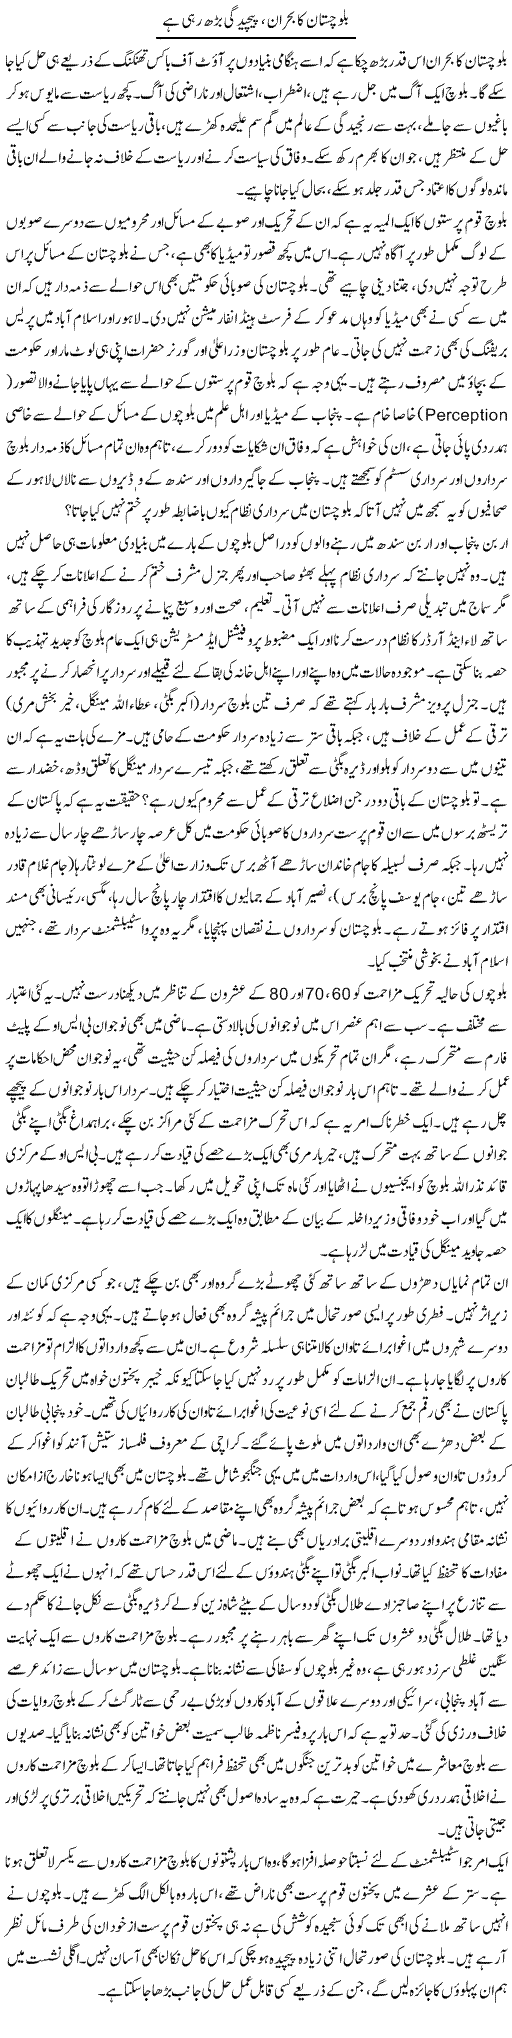 Balochistan Bohran Express Column Amir Khakwani 2 August 2010